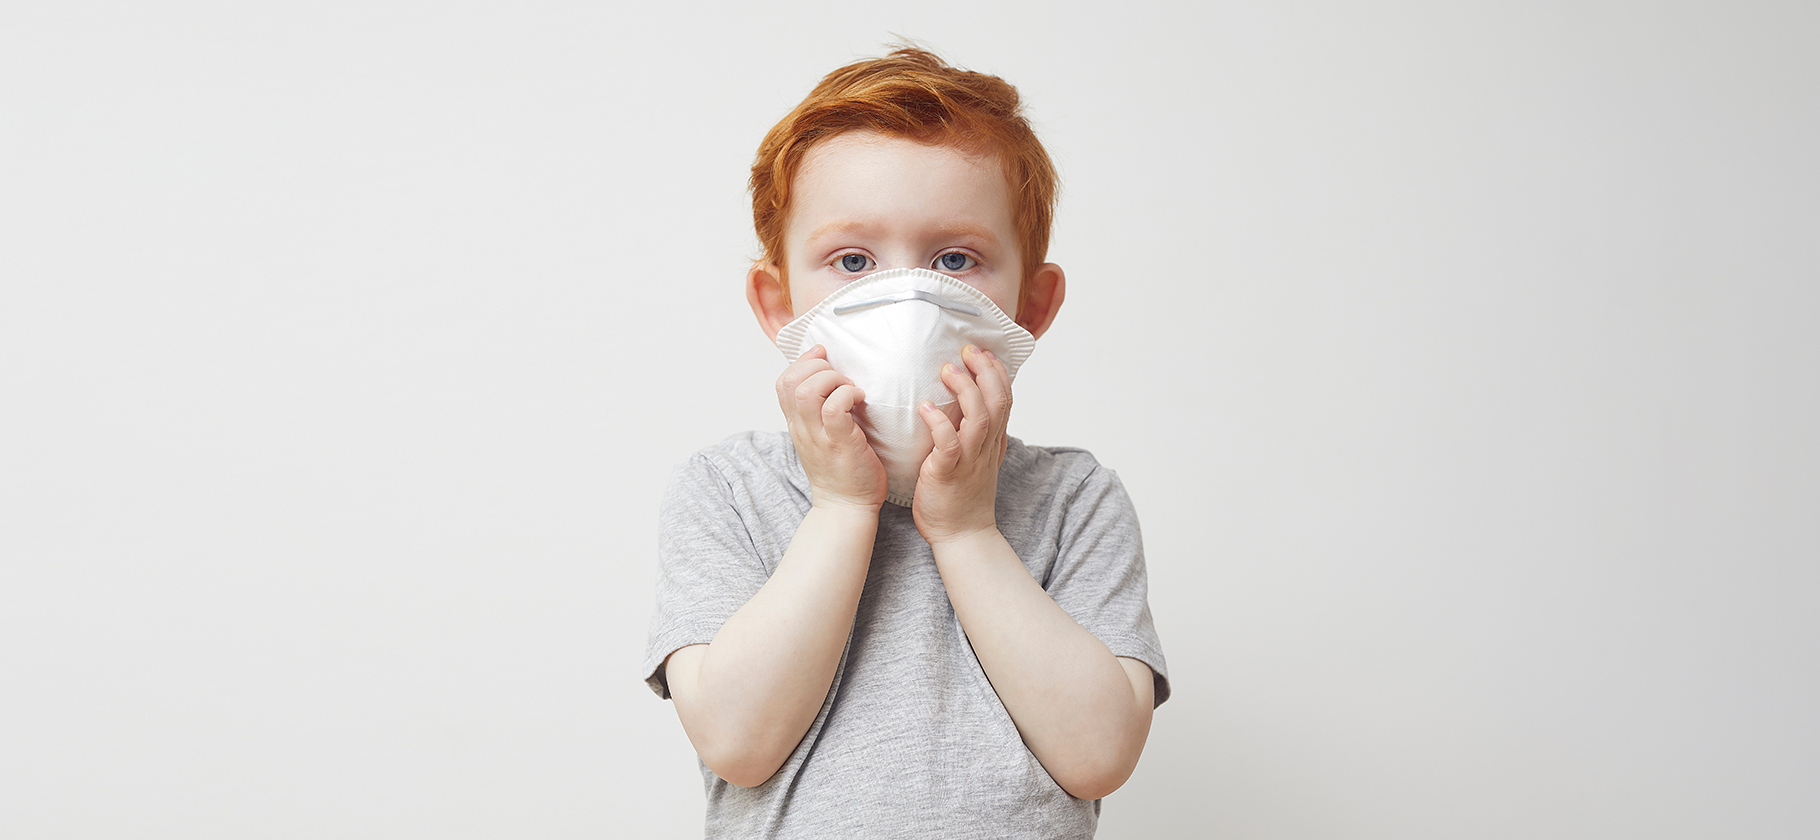 7 мифов о коронавирусной болезни у детей